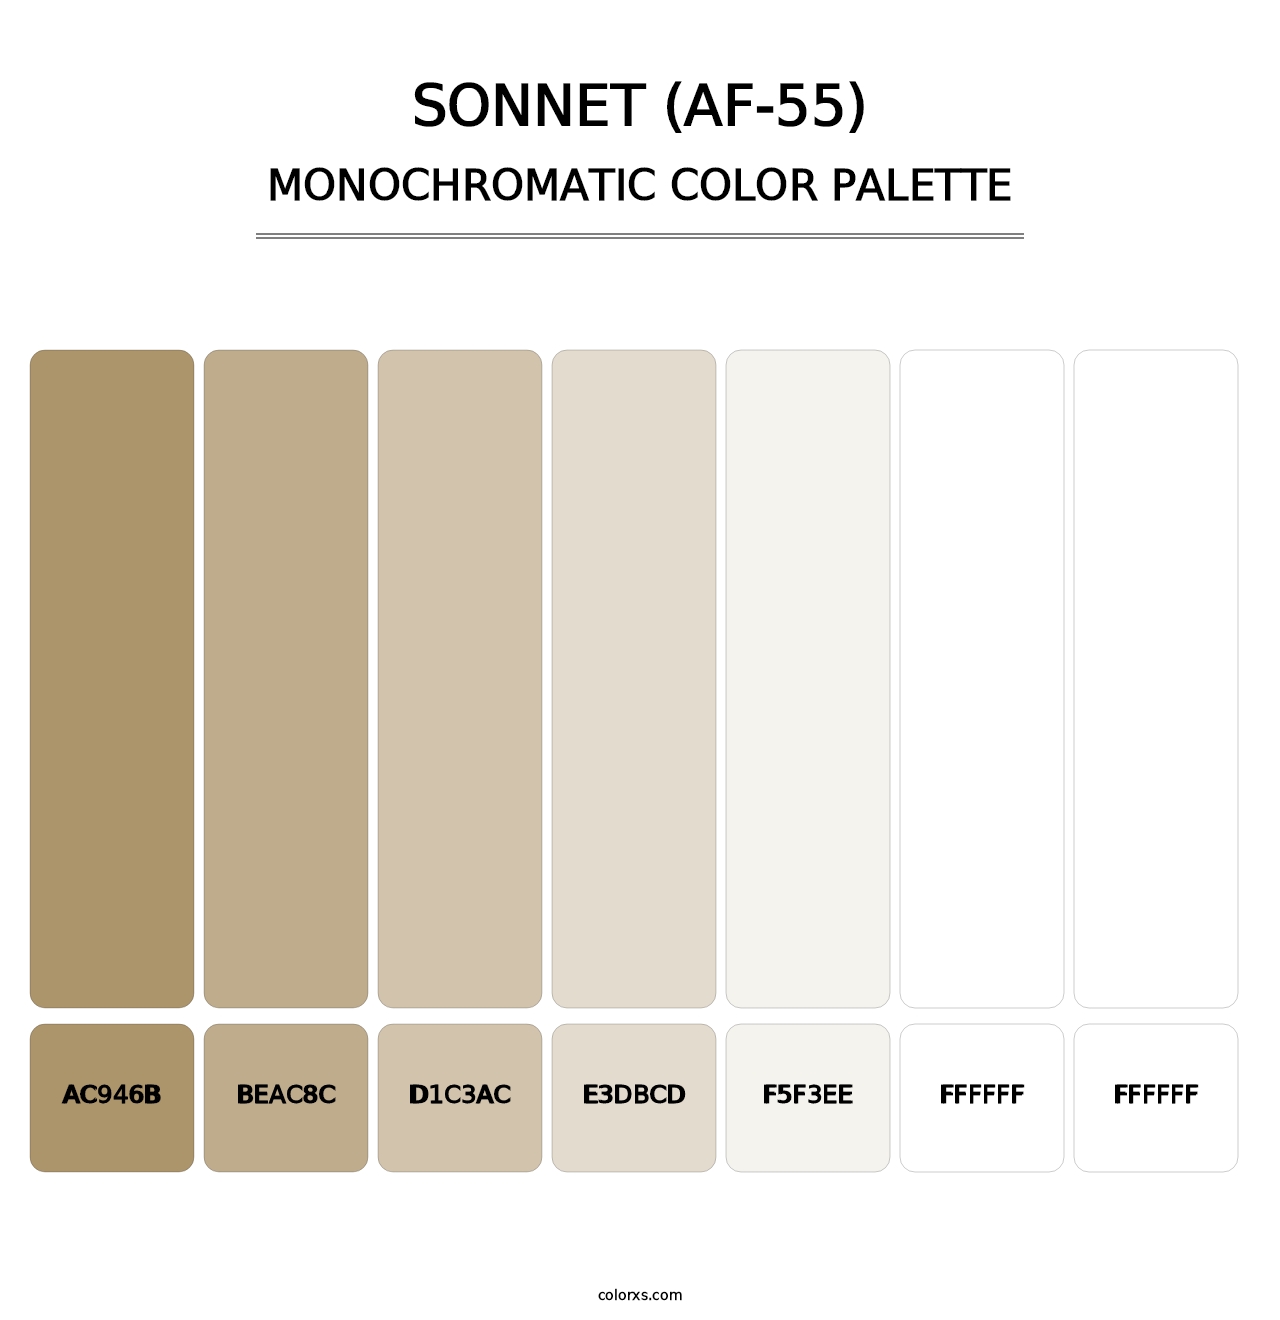 Sonnet (AF-55) - Monochromatic Color Palette